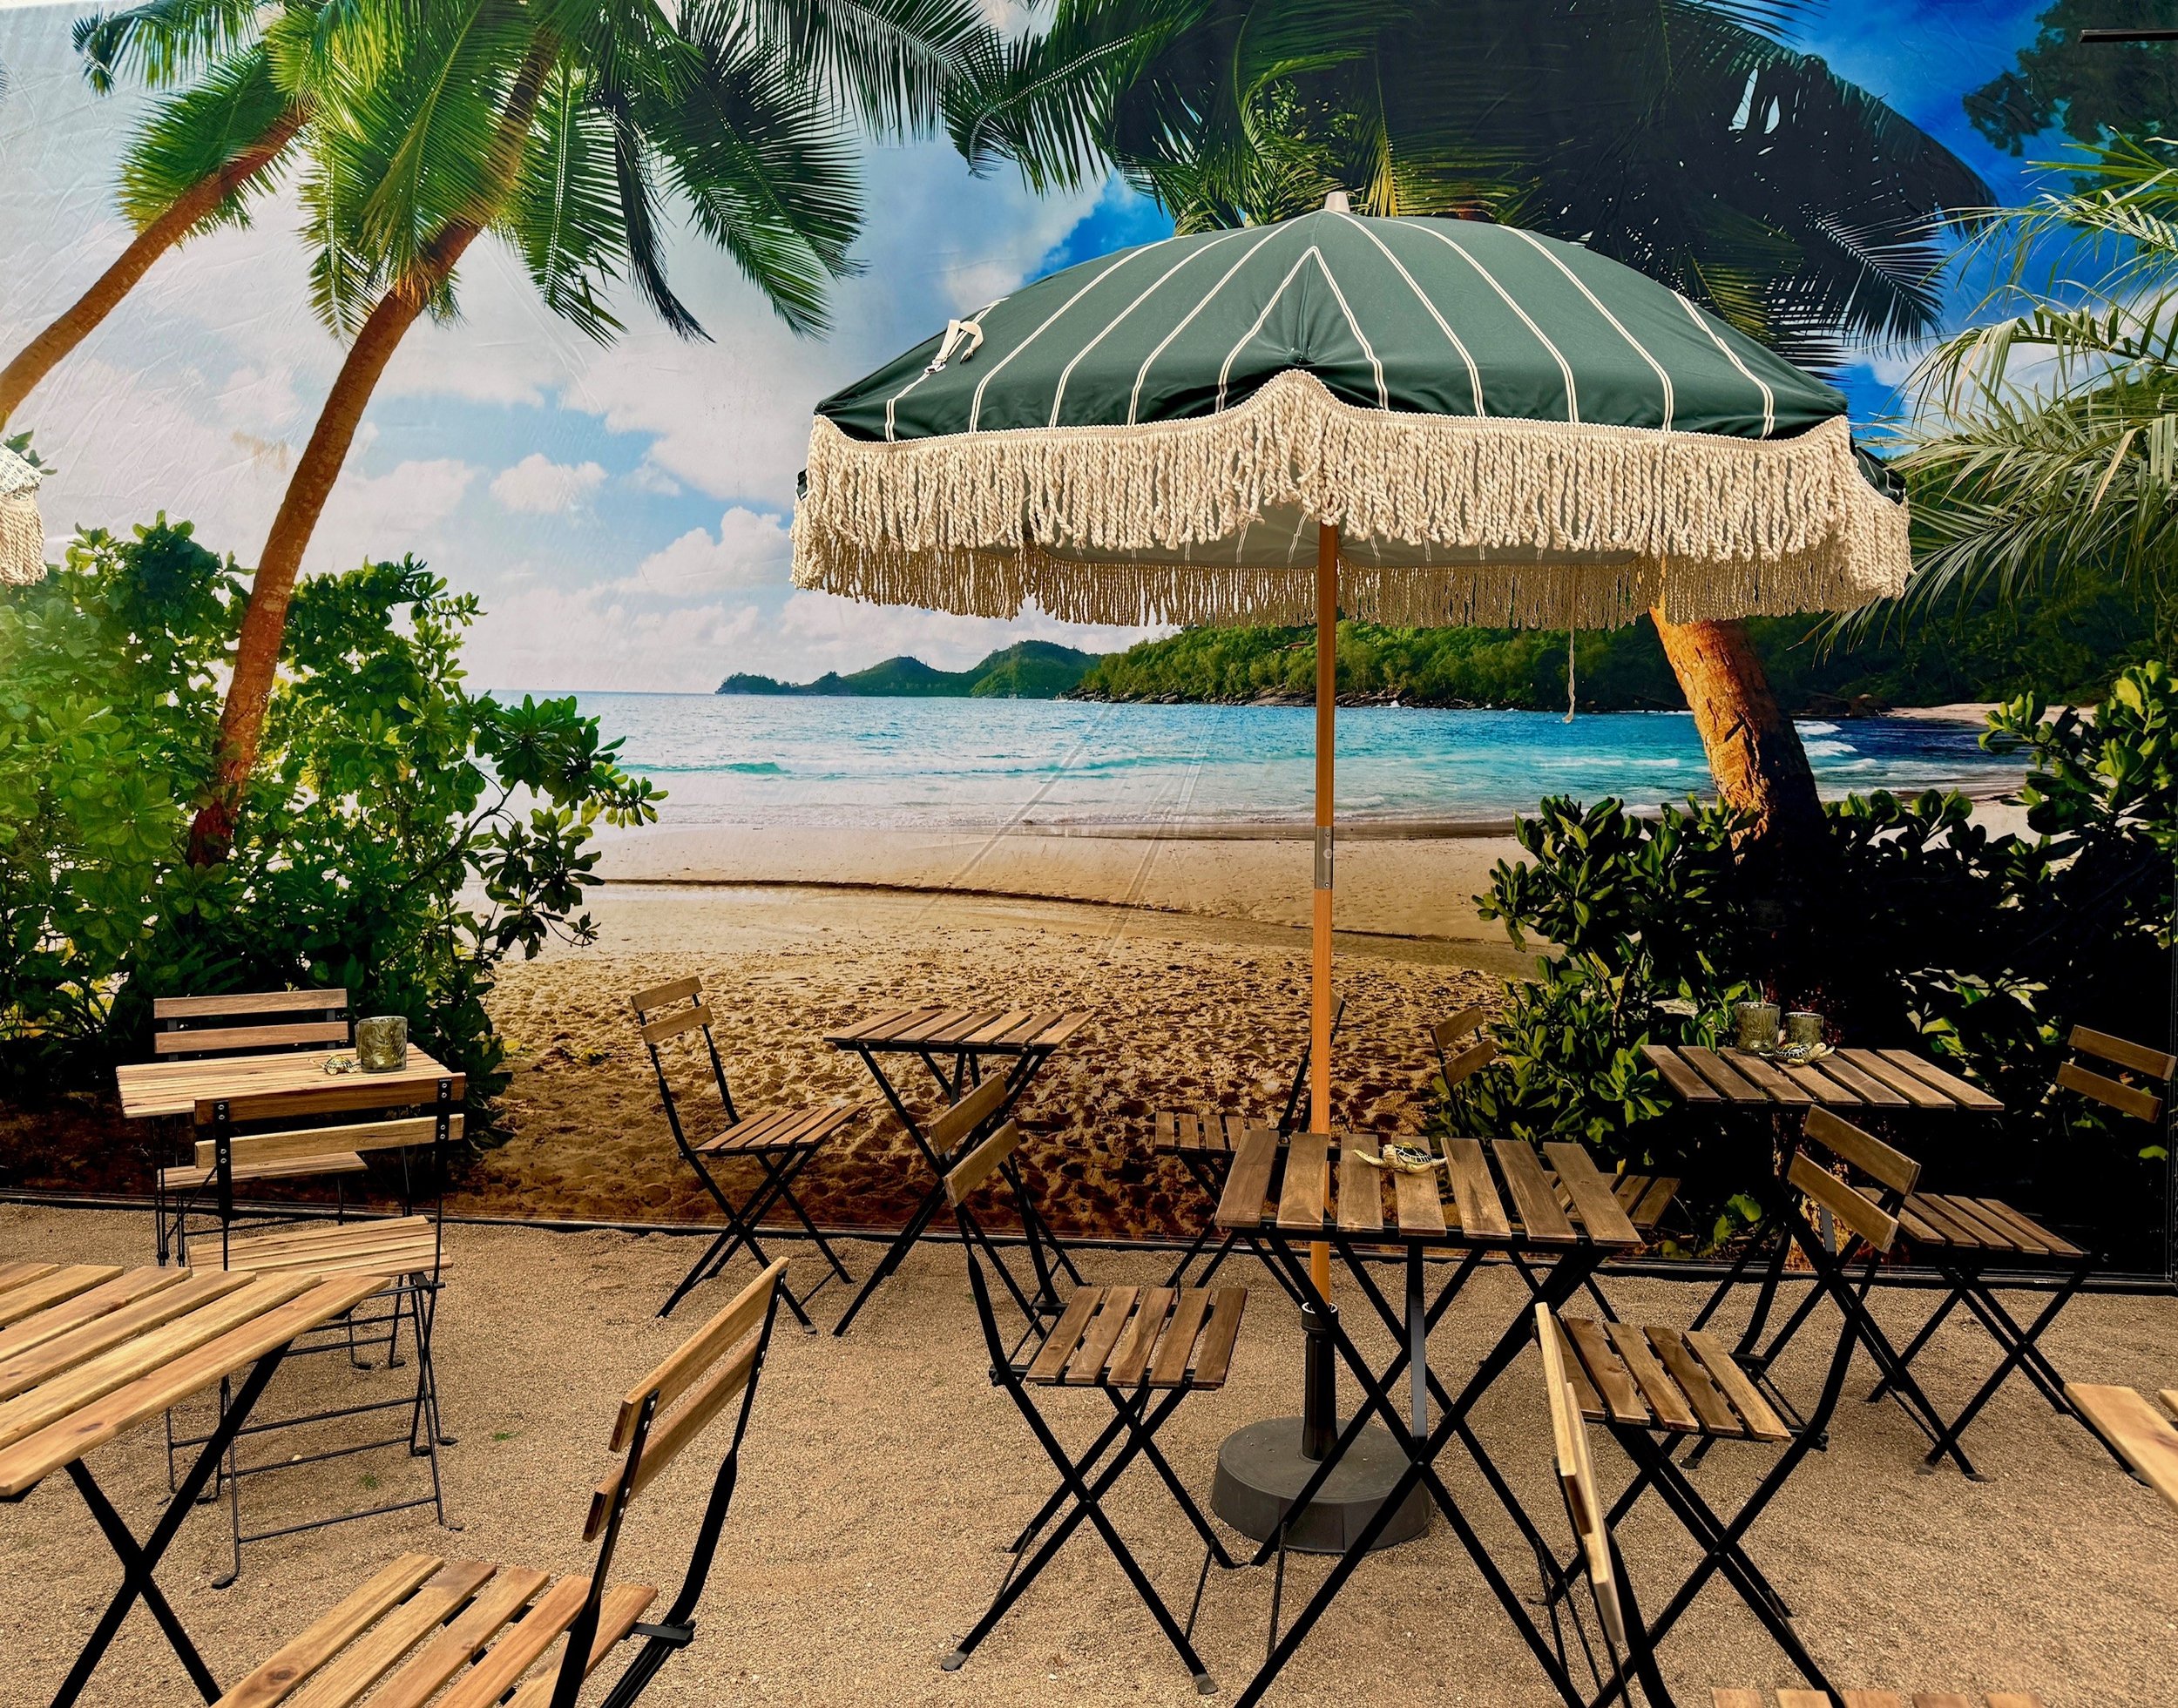 Strand och parasollbild.jpg